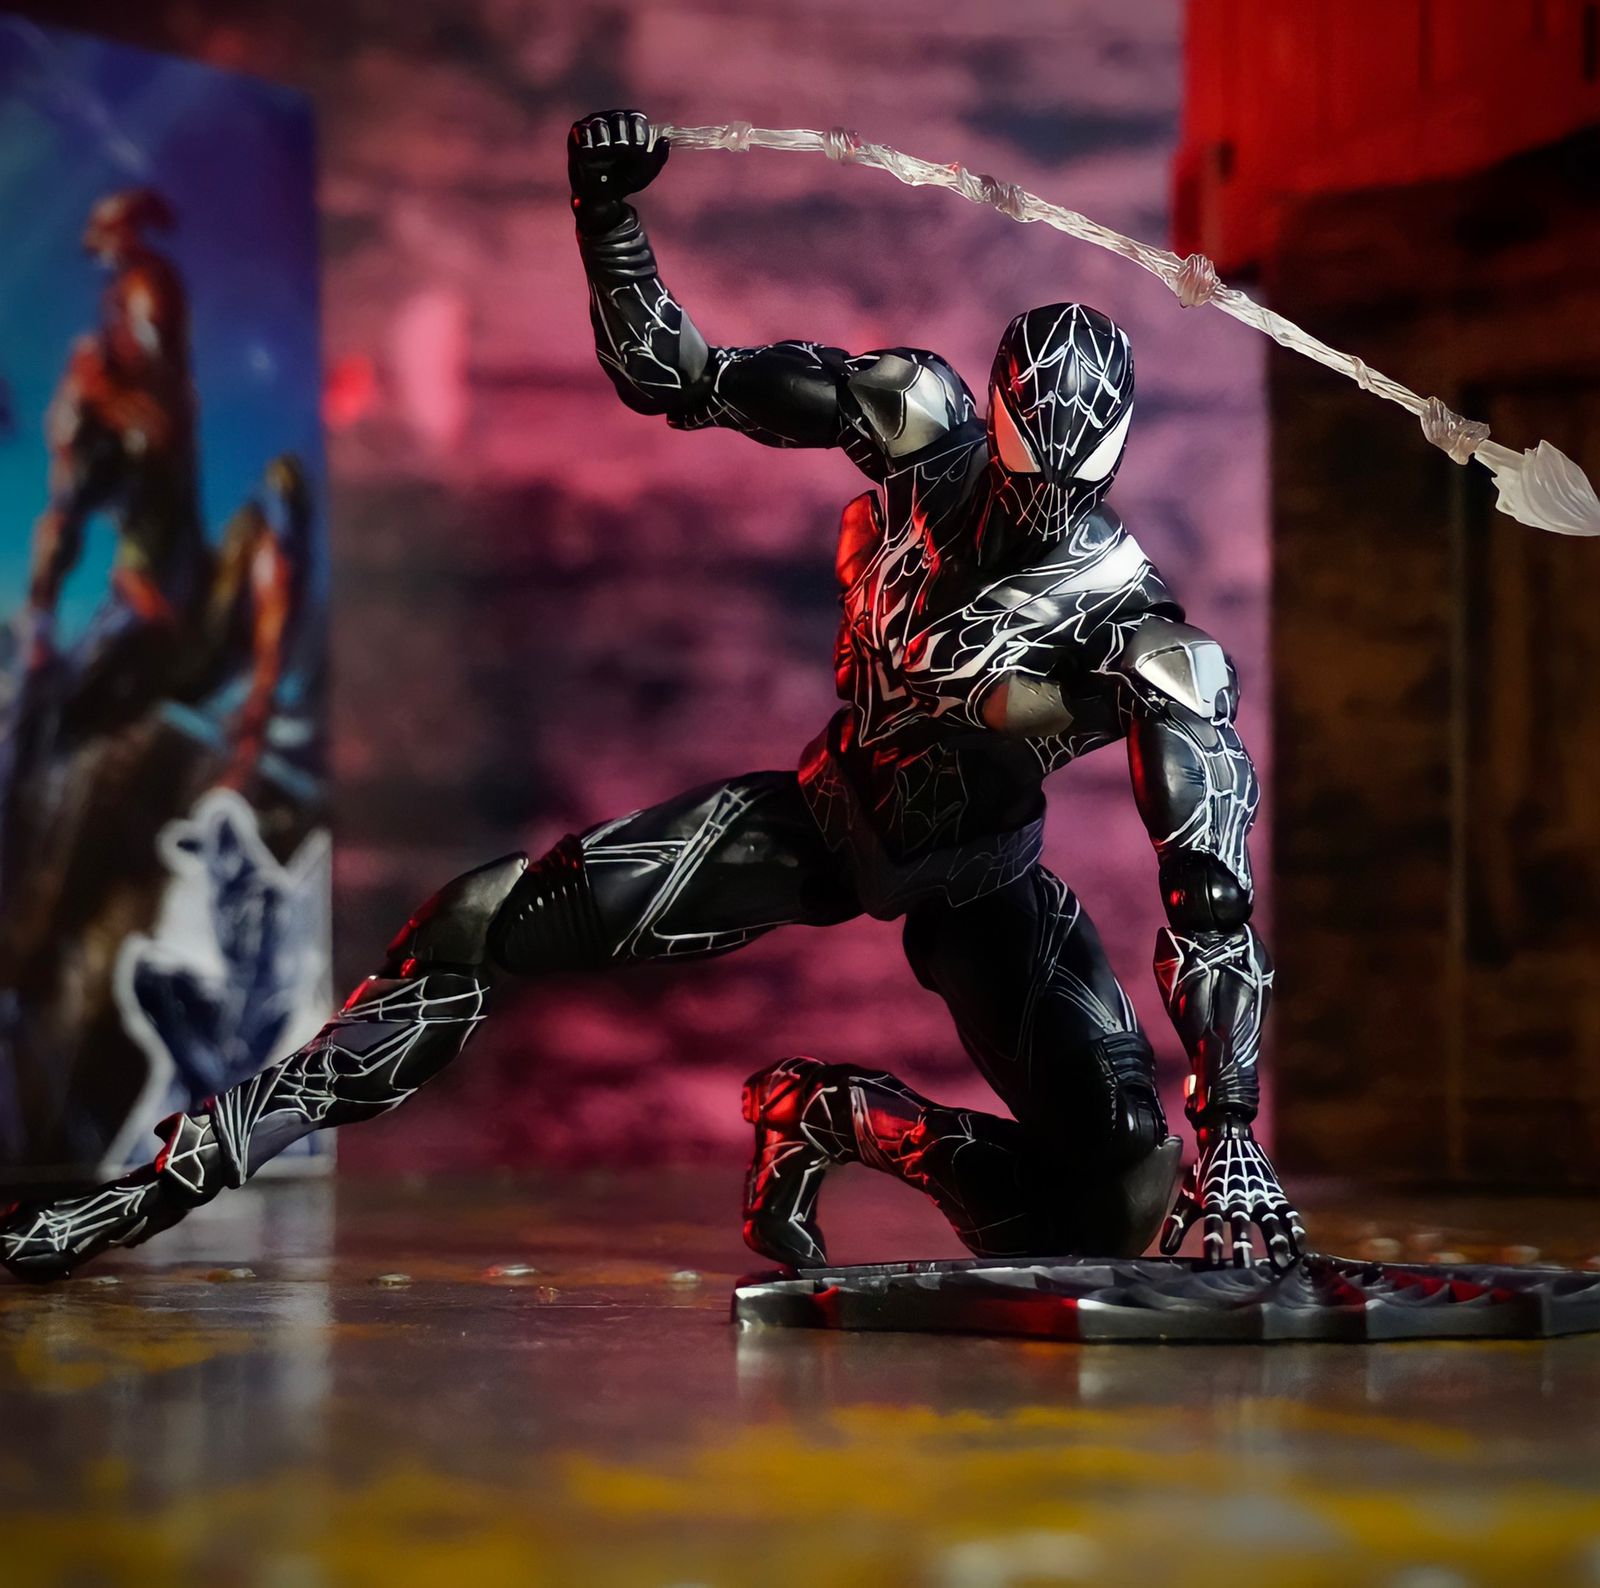 Action Figure Homem Aranha Spider Man Venom Simbionte Vingadores Avengers Marvel Escala 1/6 Play Arts Kai - MKP